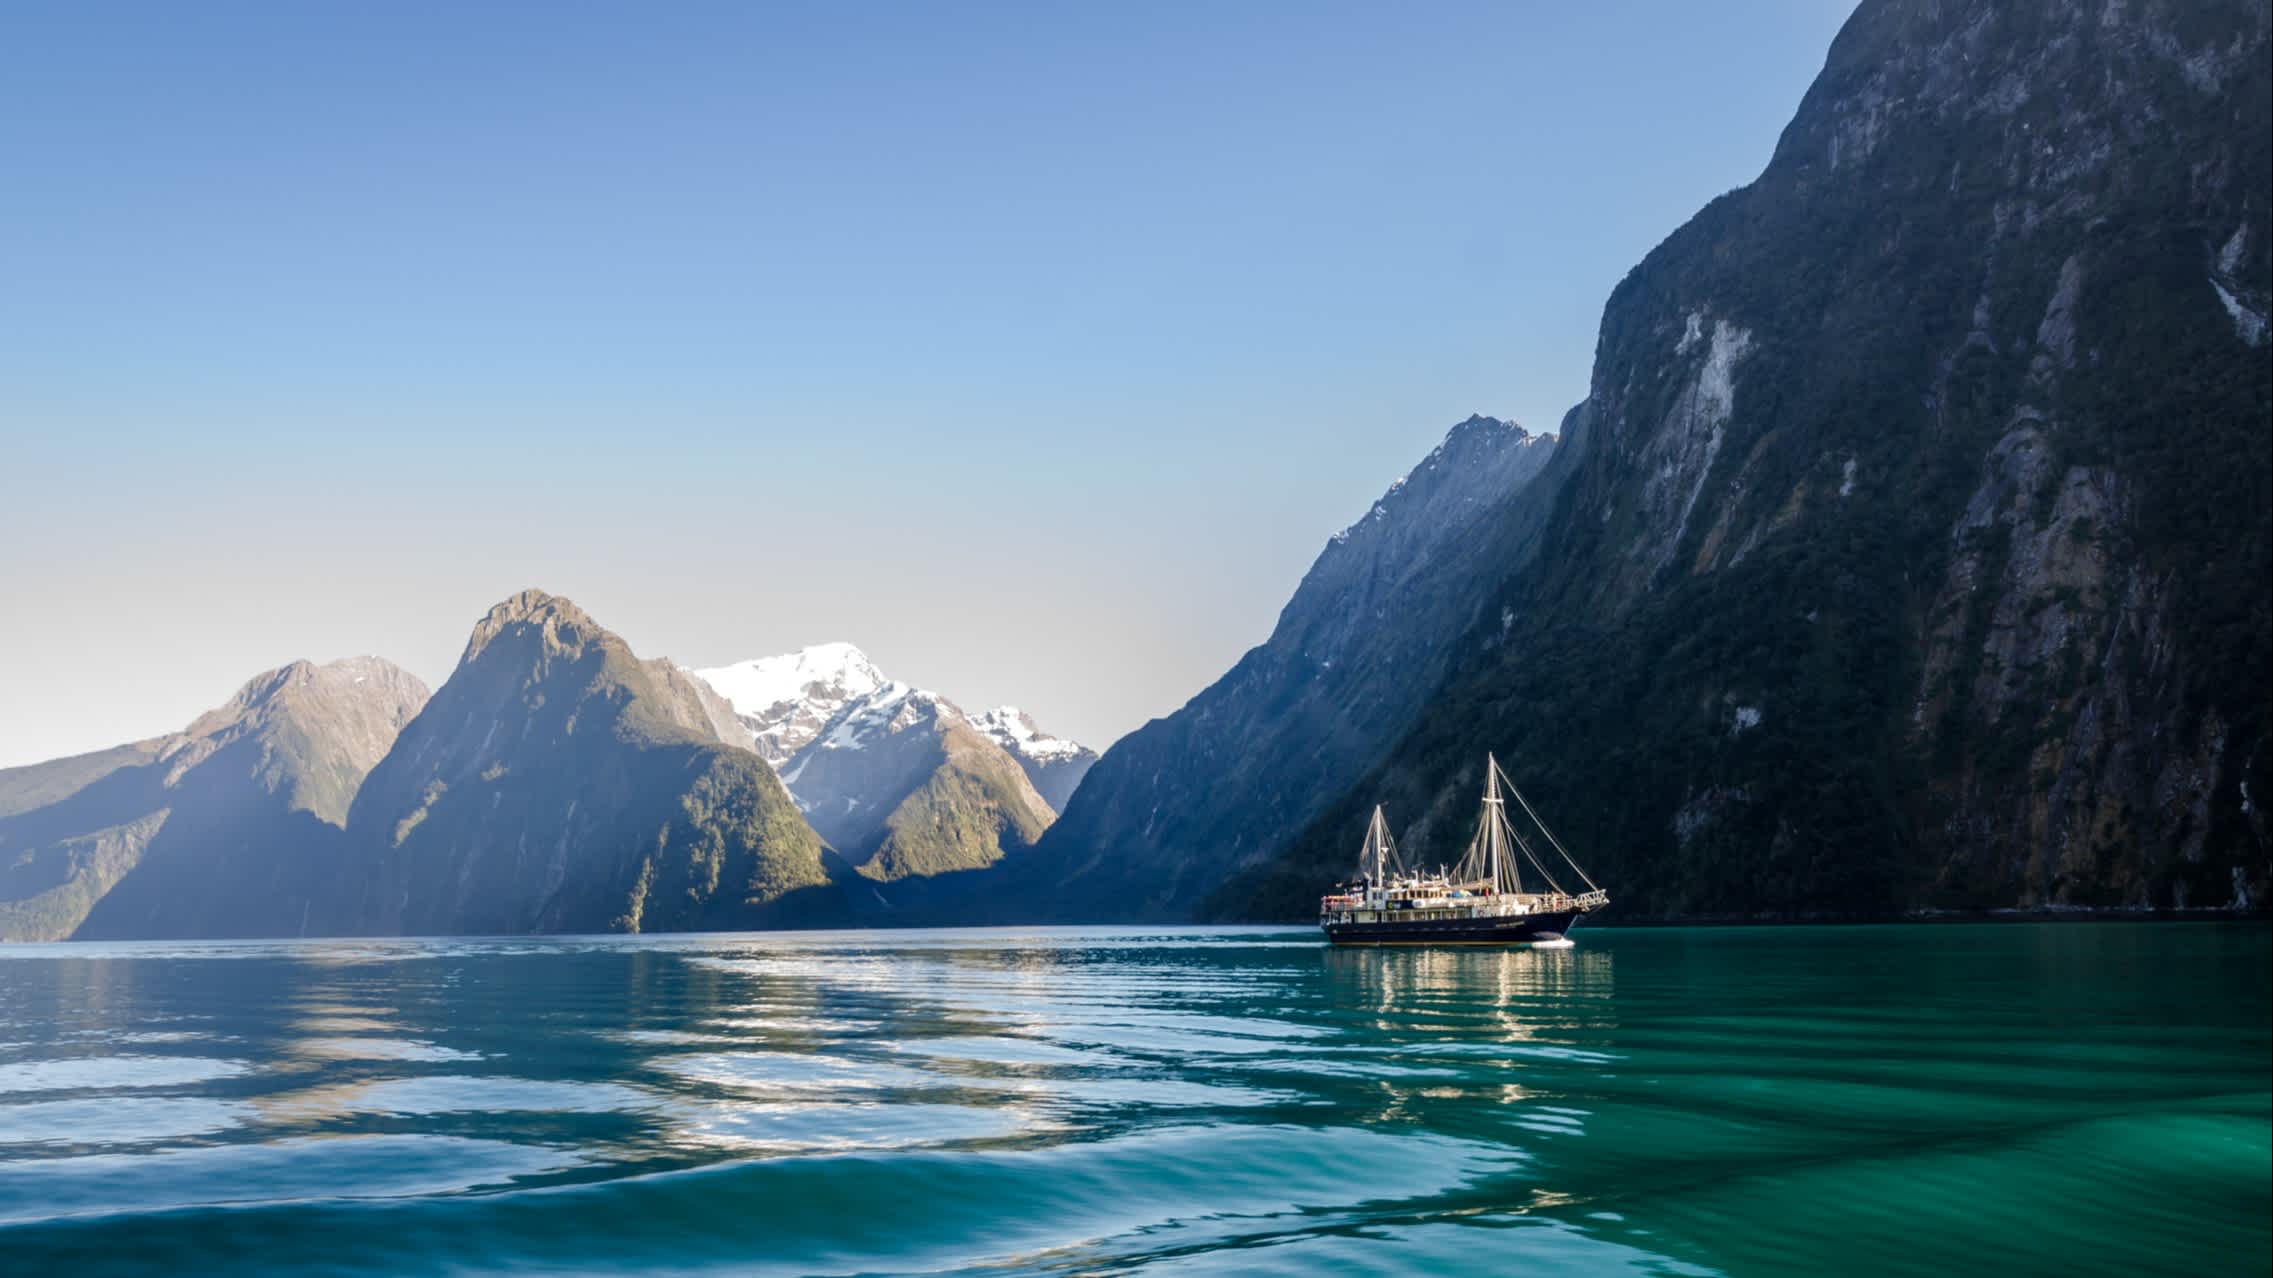 Bateau de croisière sur le fjord de Milford Sound, Nouvelle-Zélande.

